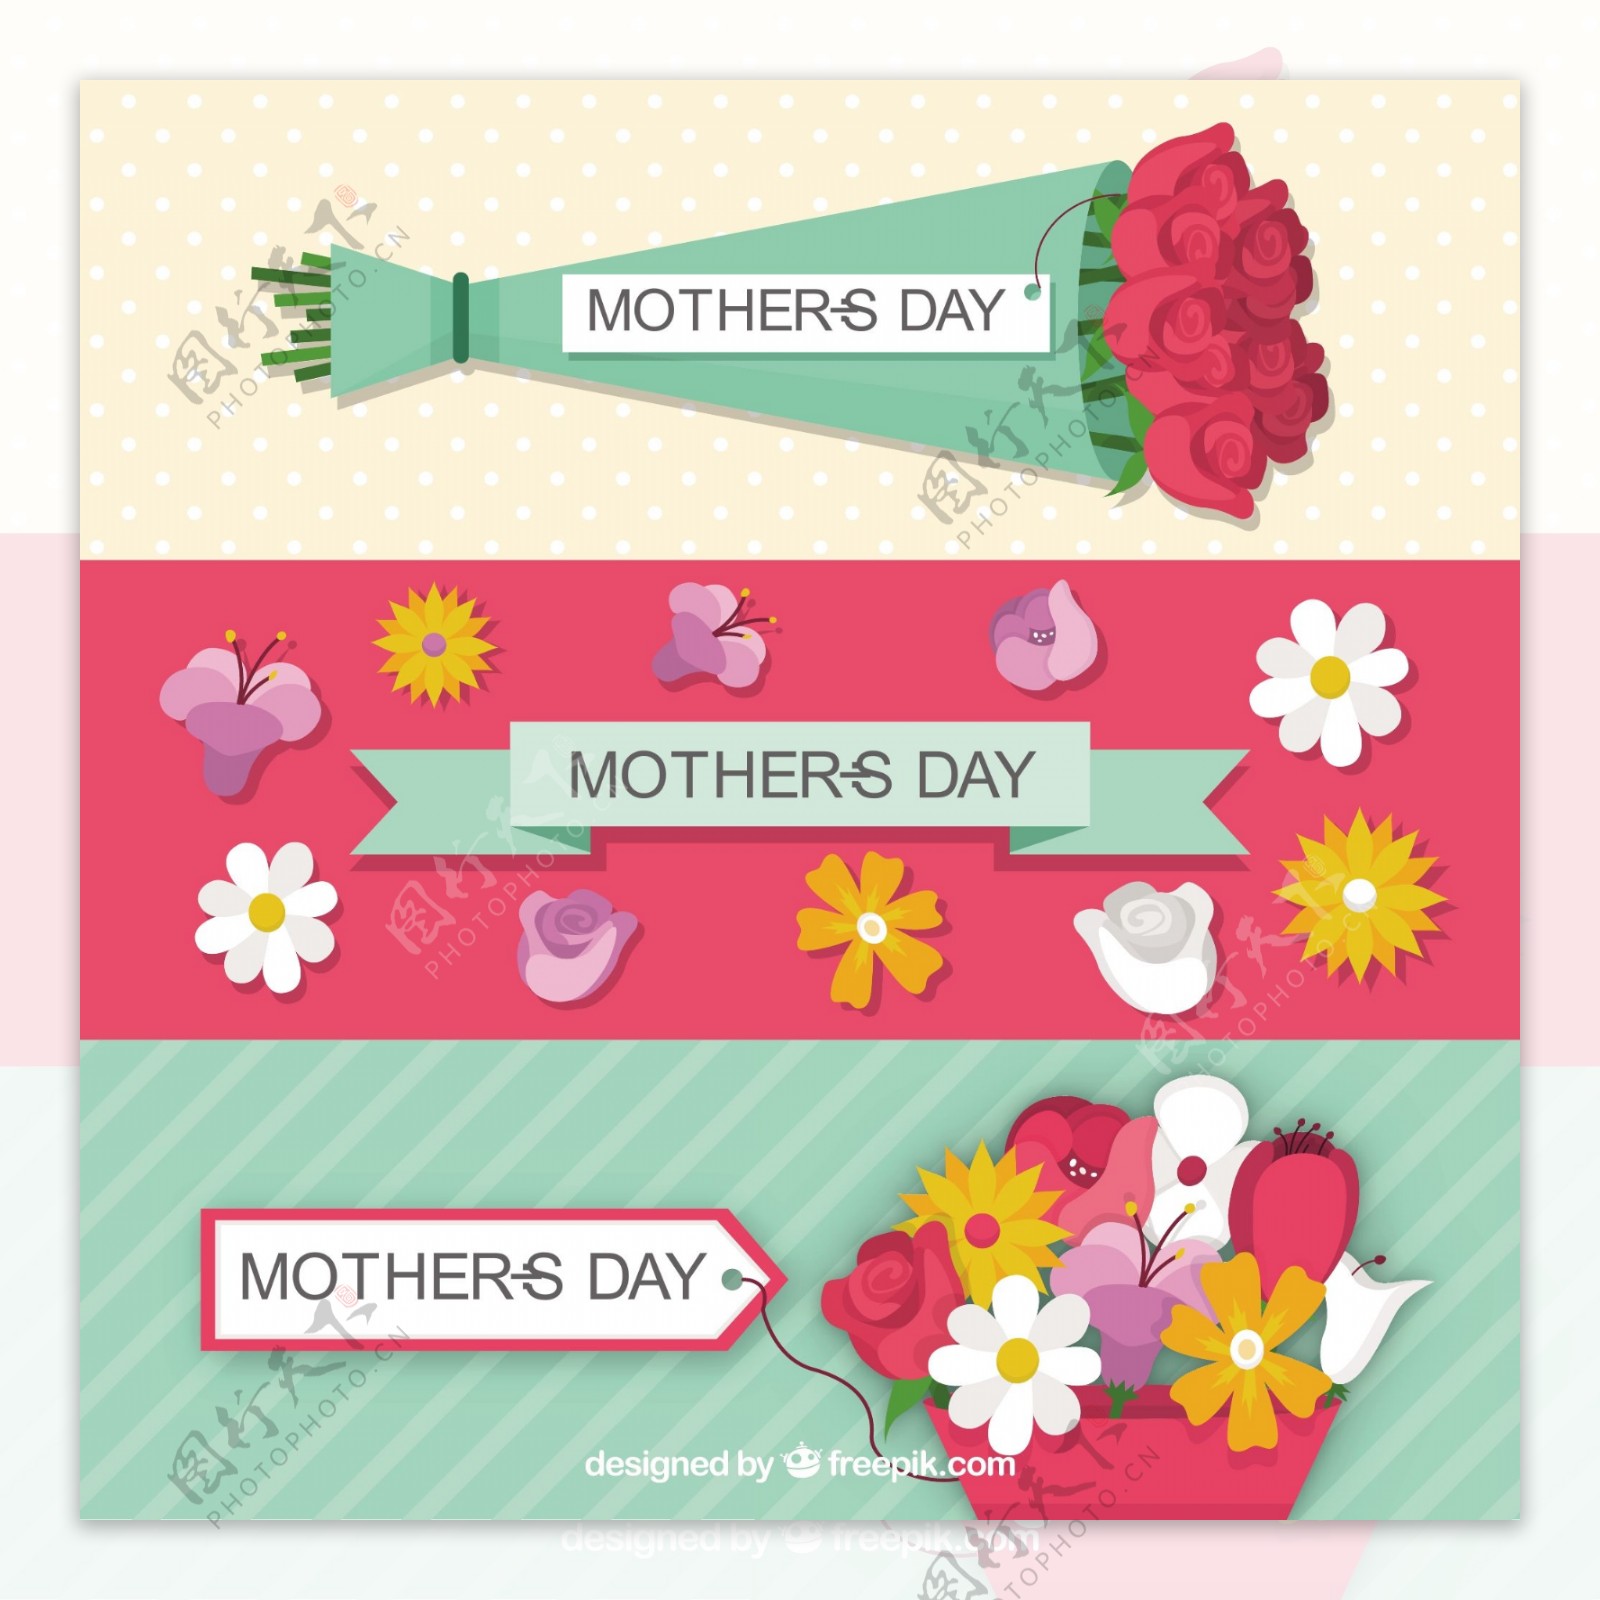 为母亲节献上花束和鲜花的可爱横幅